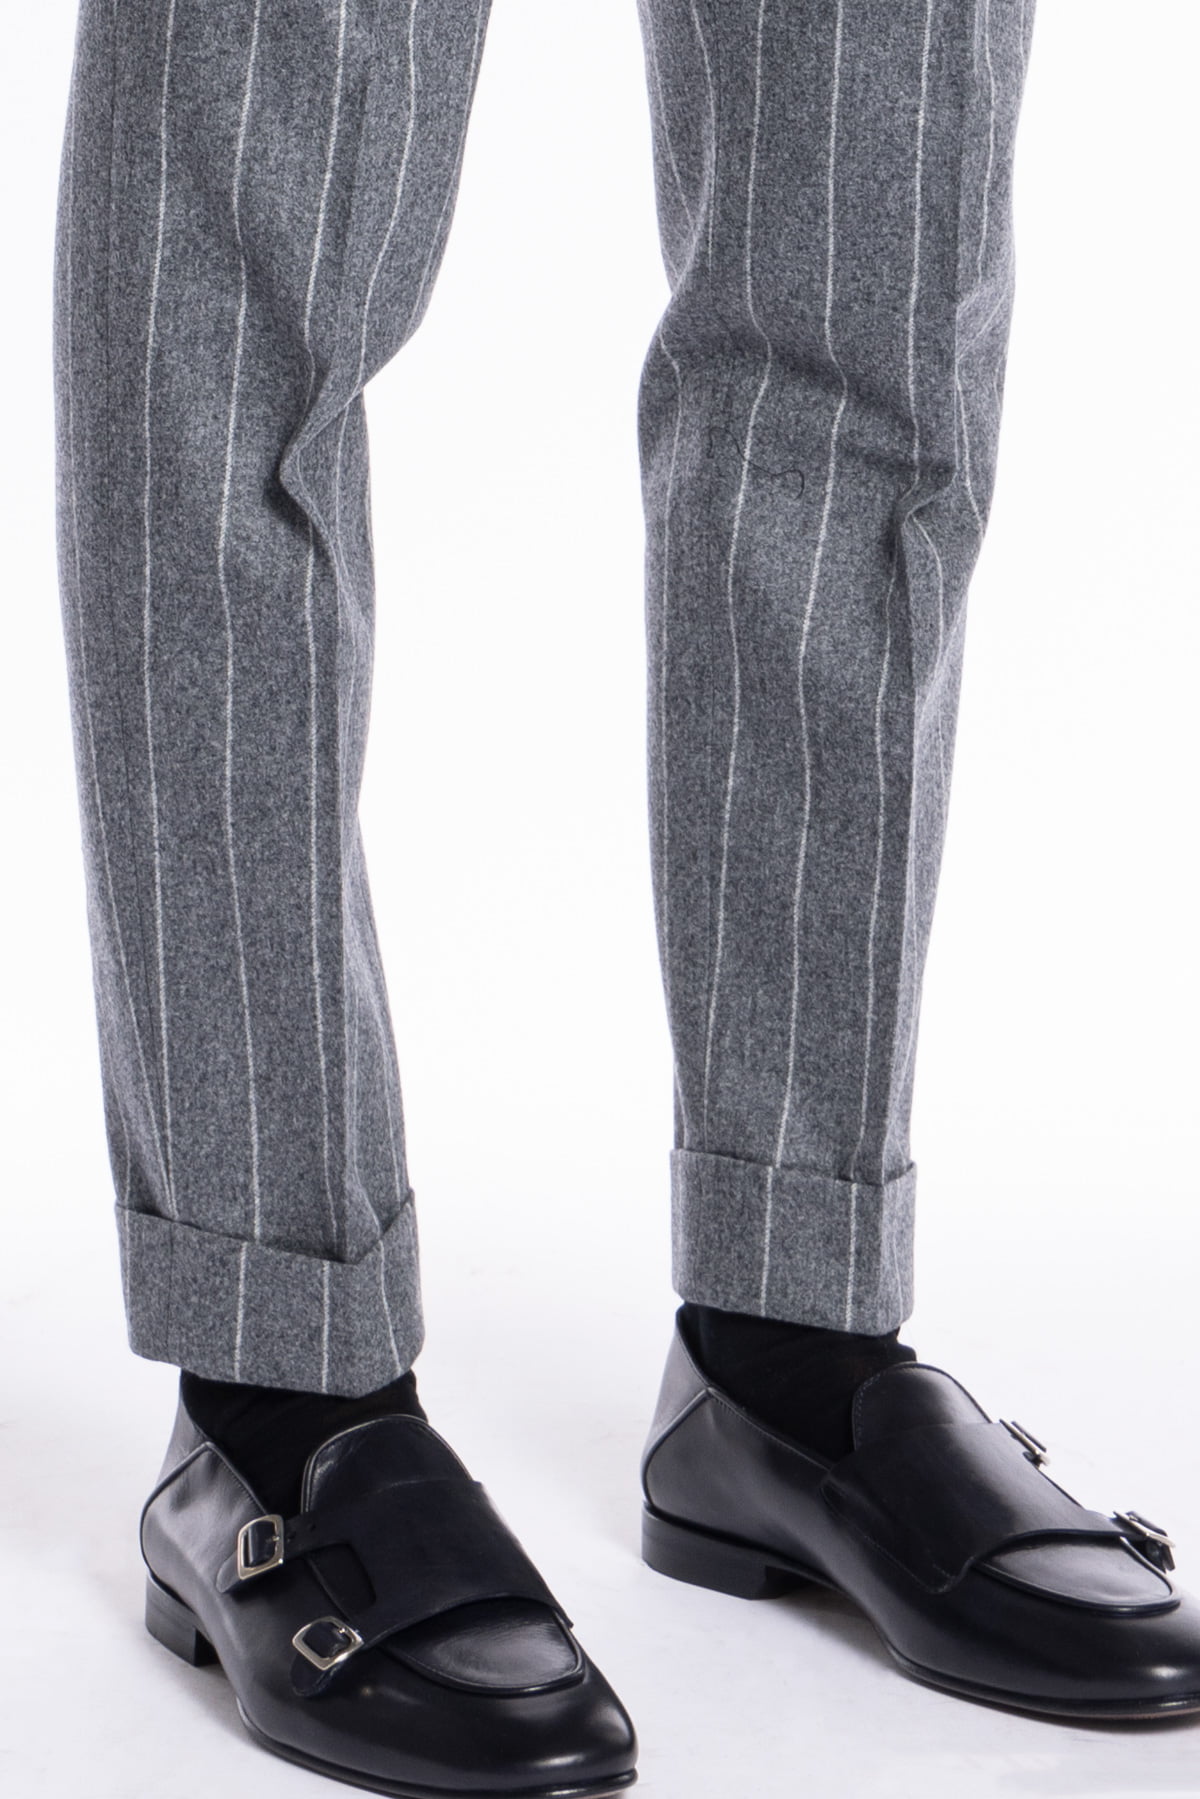 Pantalone uomo grigio chiaro gessato vita alta tasca america in lana flanella Vitale Barberis Canonico con doppia pinces e fibbie laterali regolabili